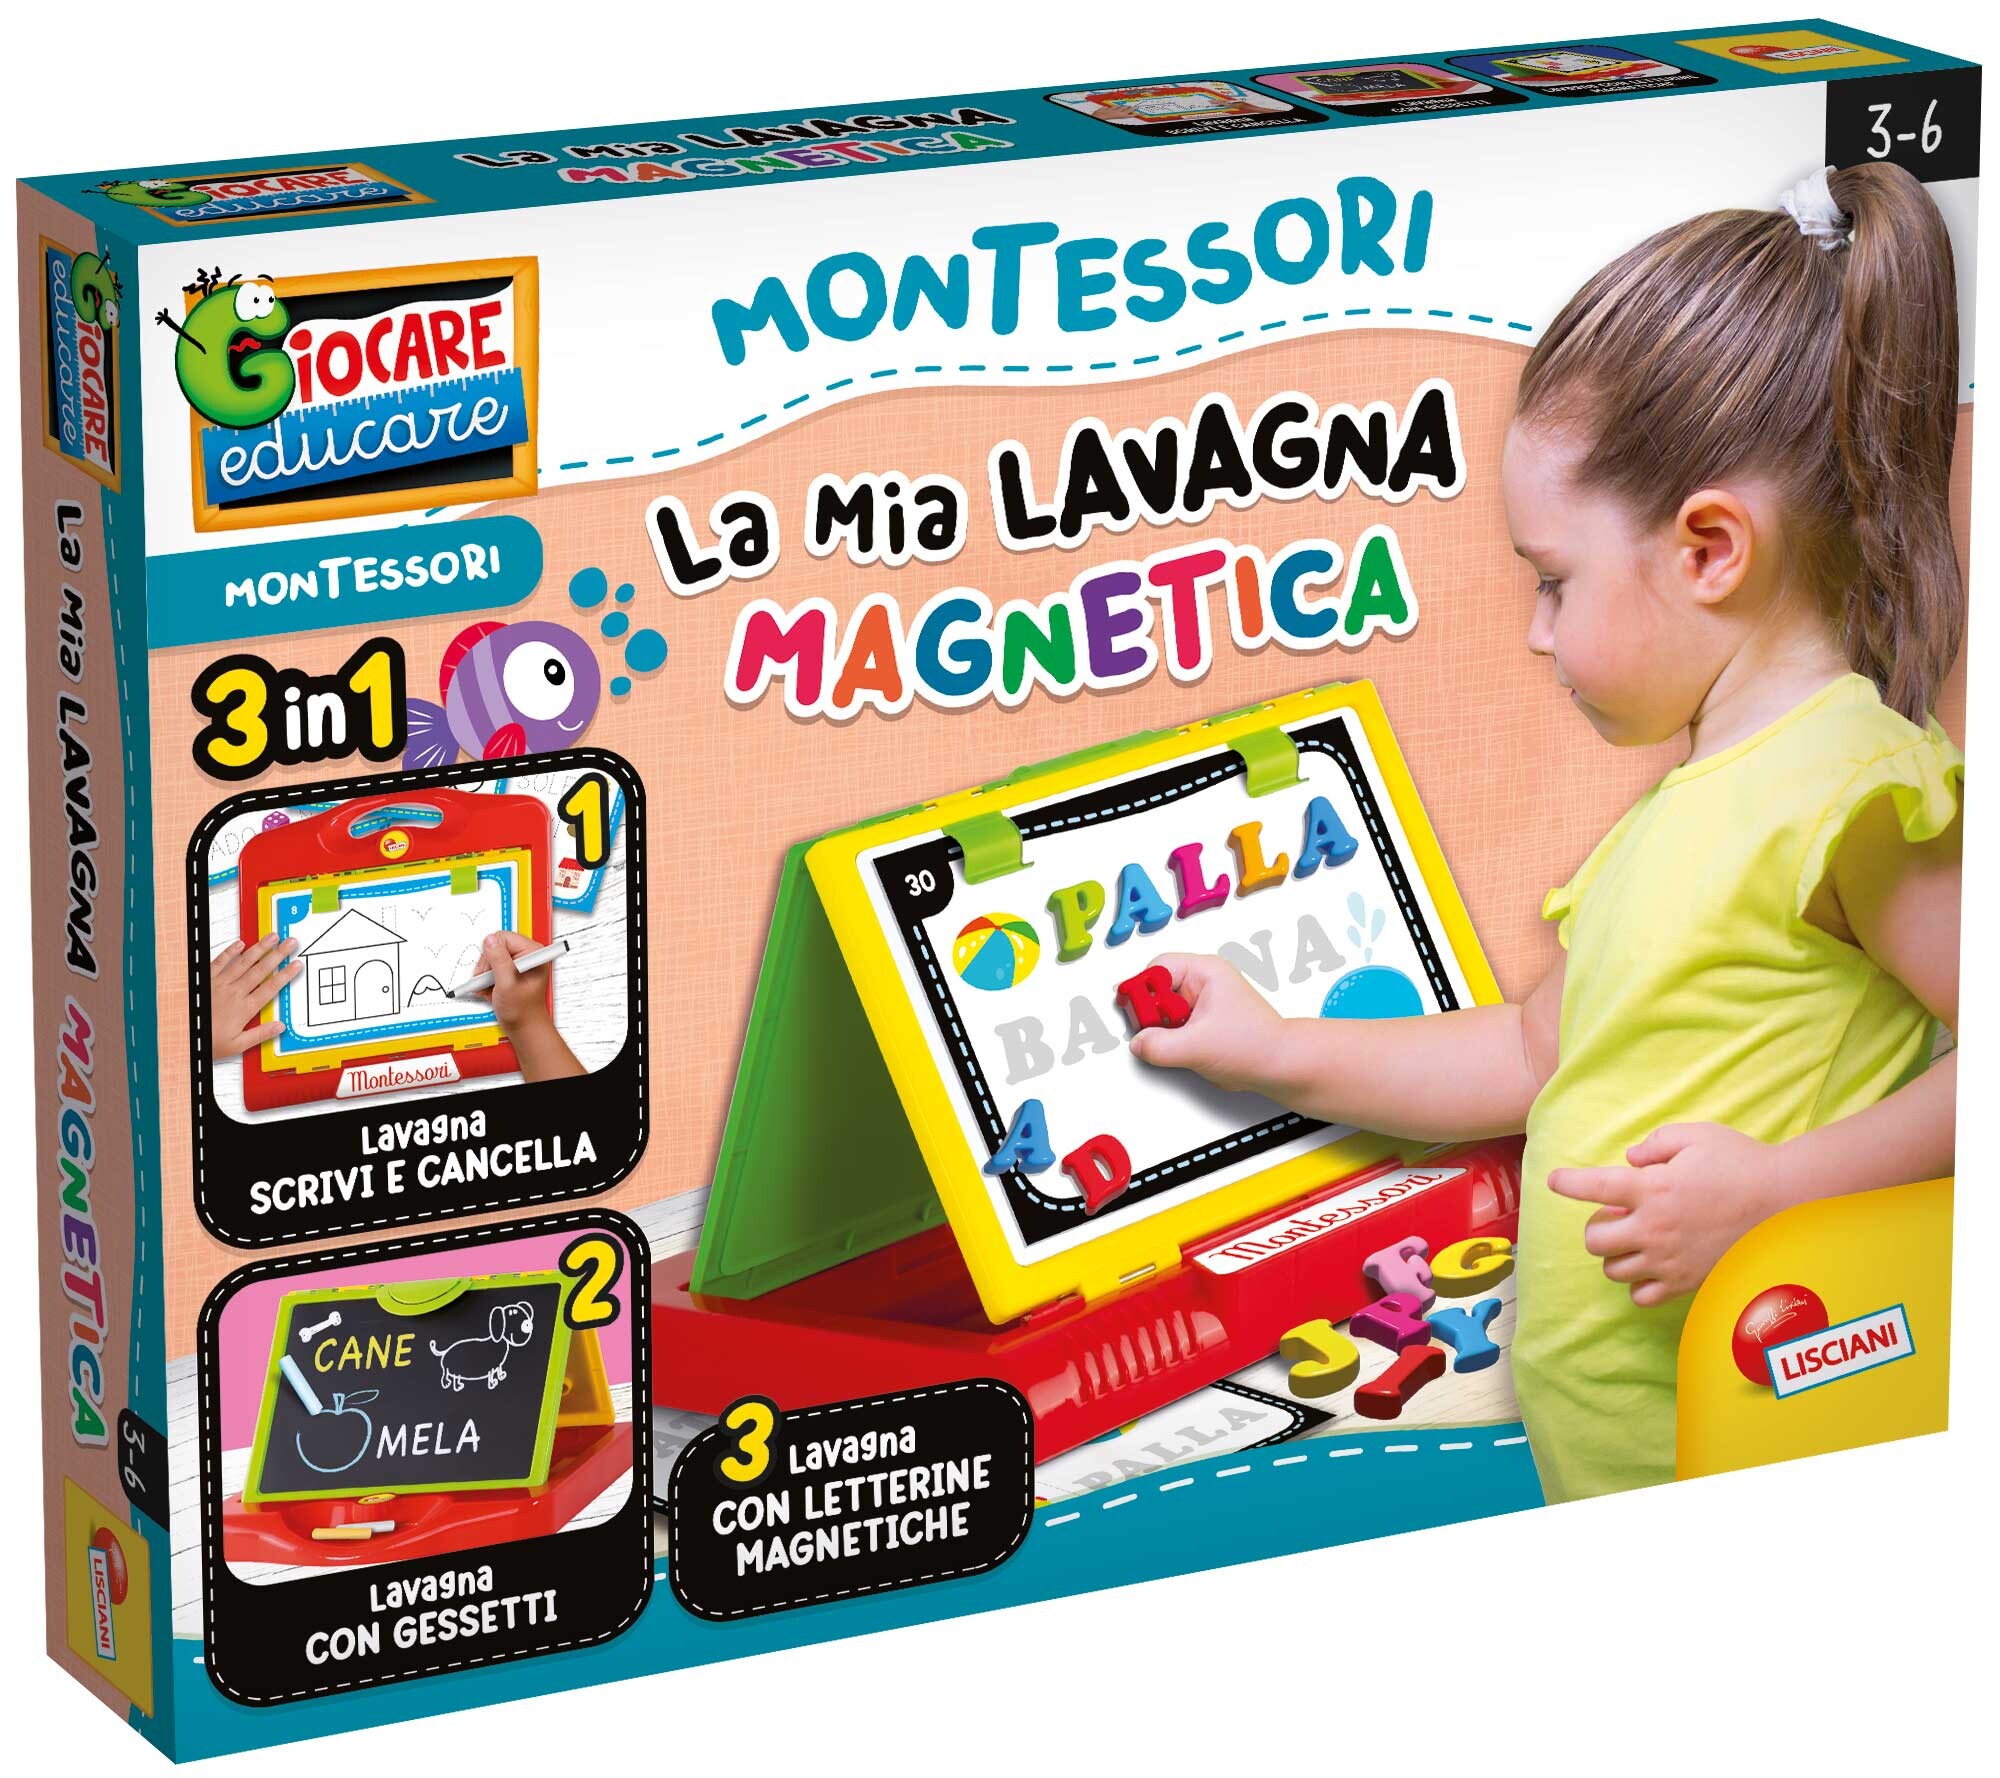 MONTESSORI LA MIA LAVAGNA MAGNETICA - Toys Center